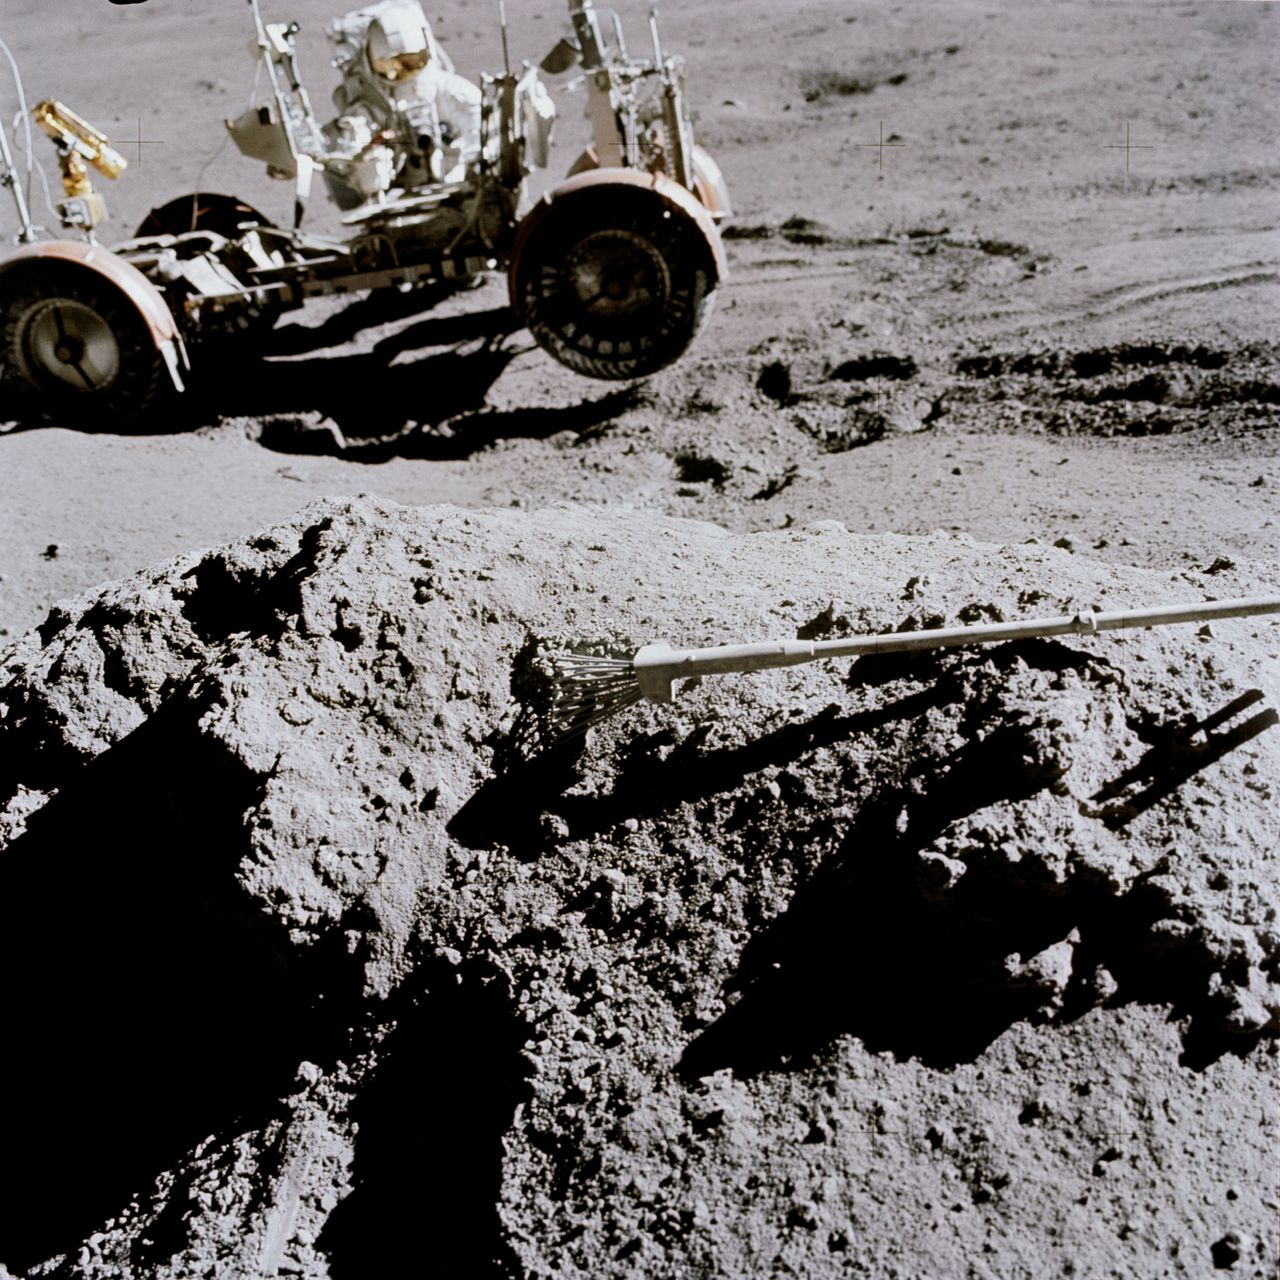 1 sierpnia 1971 (Apollo 15) - astronauta James Irwin przytrzymuje LRV. Pojazd zaczął zsuwać się tutaj ze zbocza krateru. Zdjęcie wykonał jego kolega - David Scott.